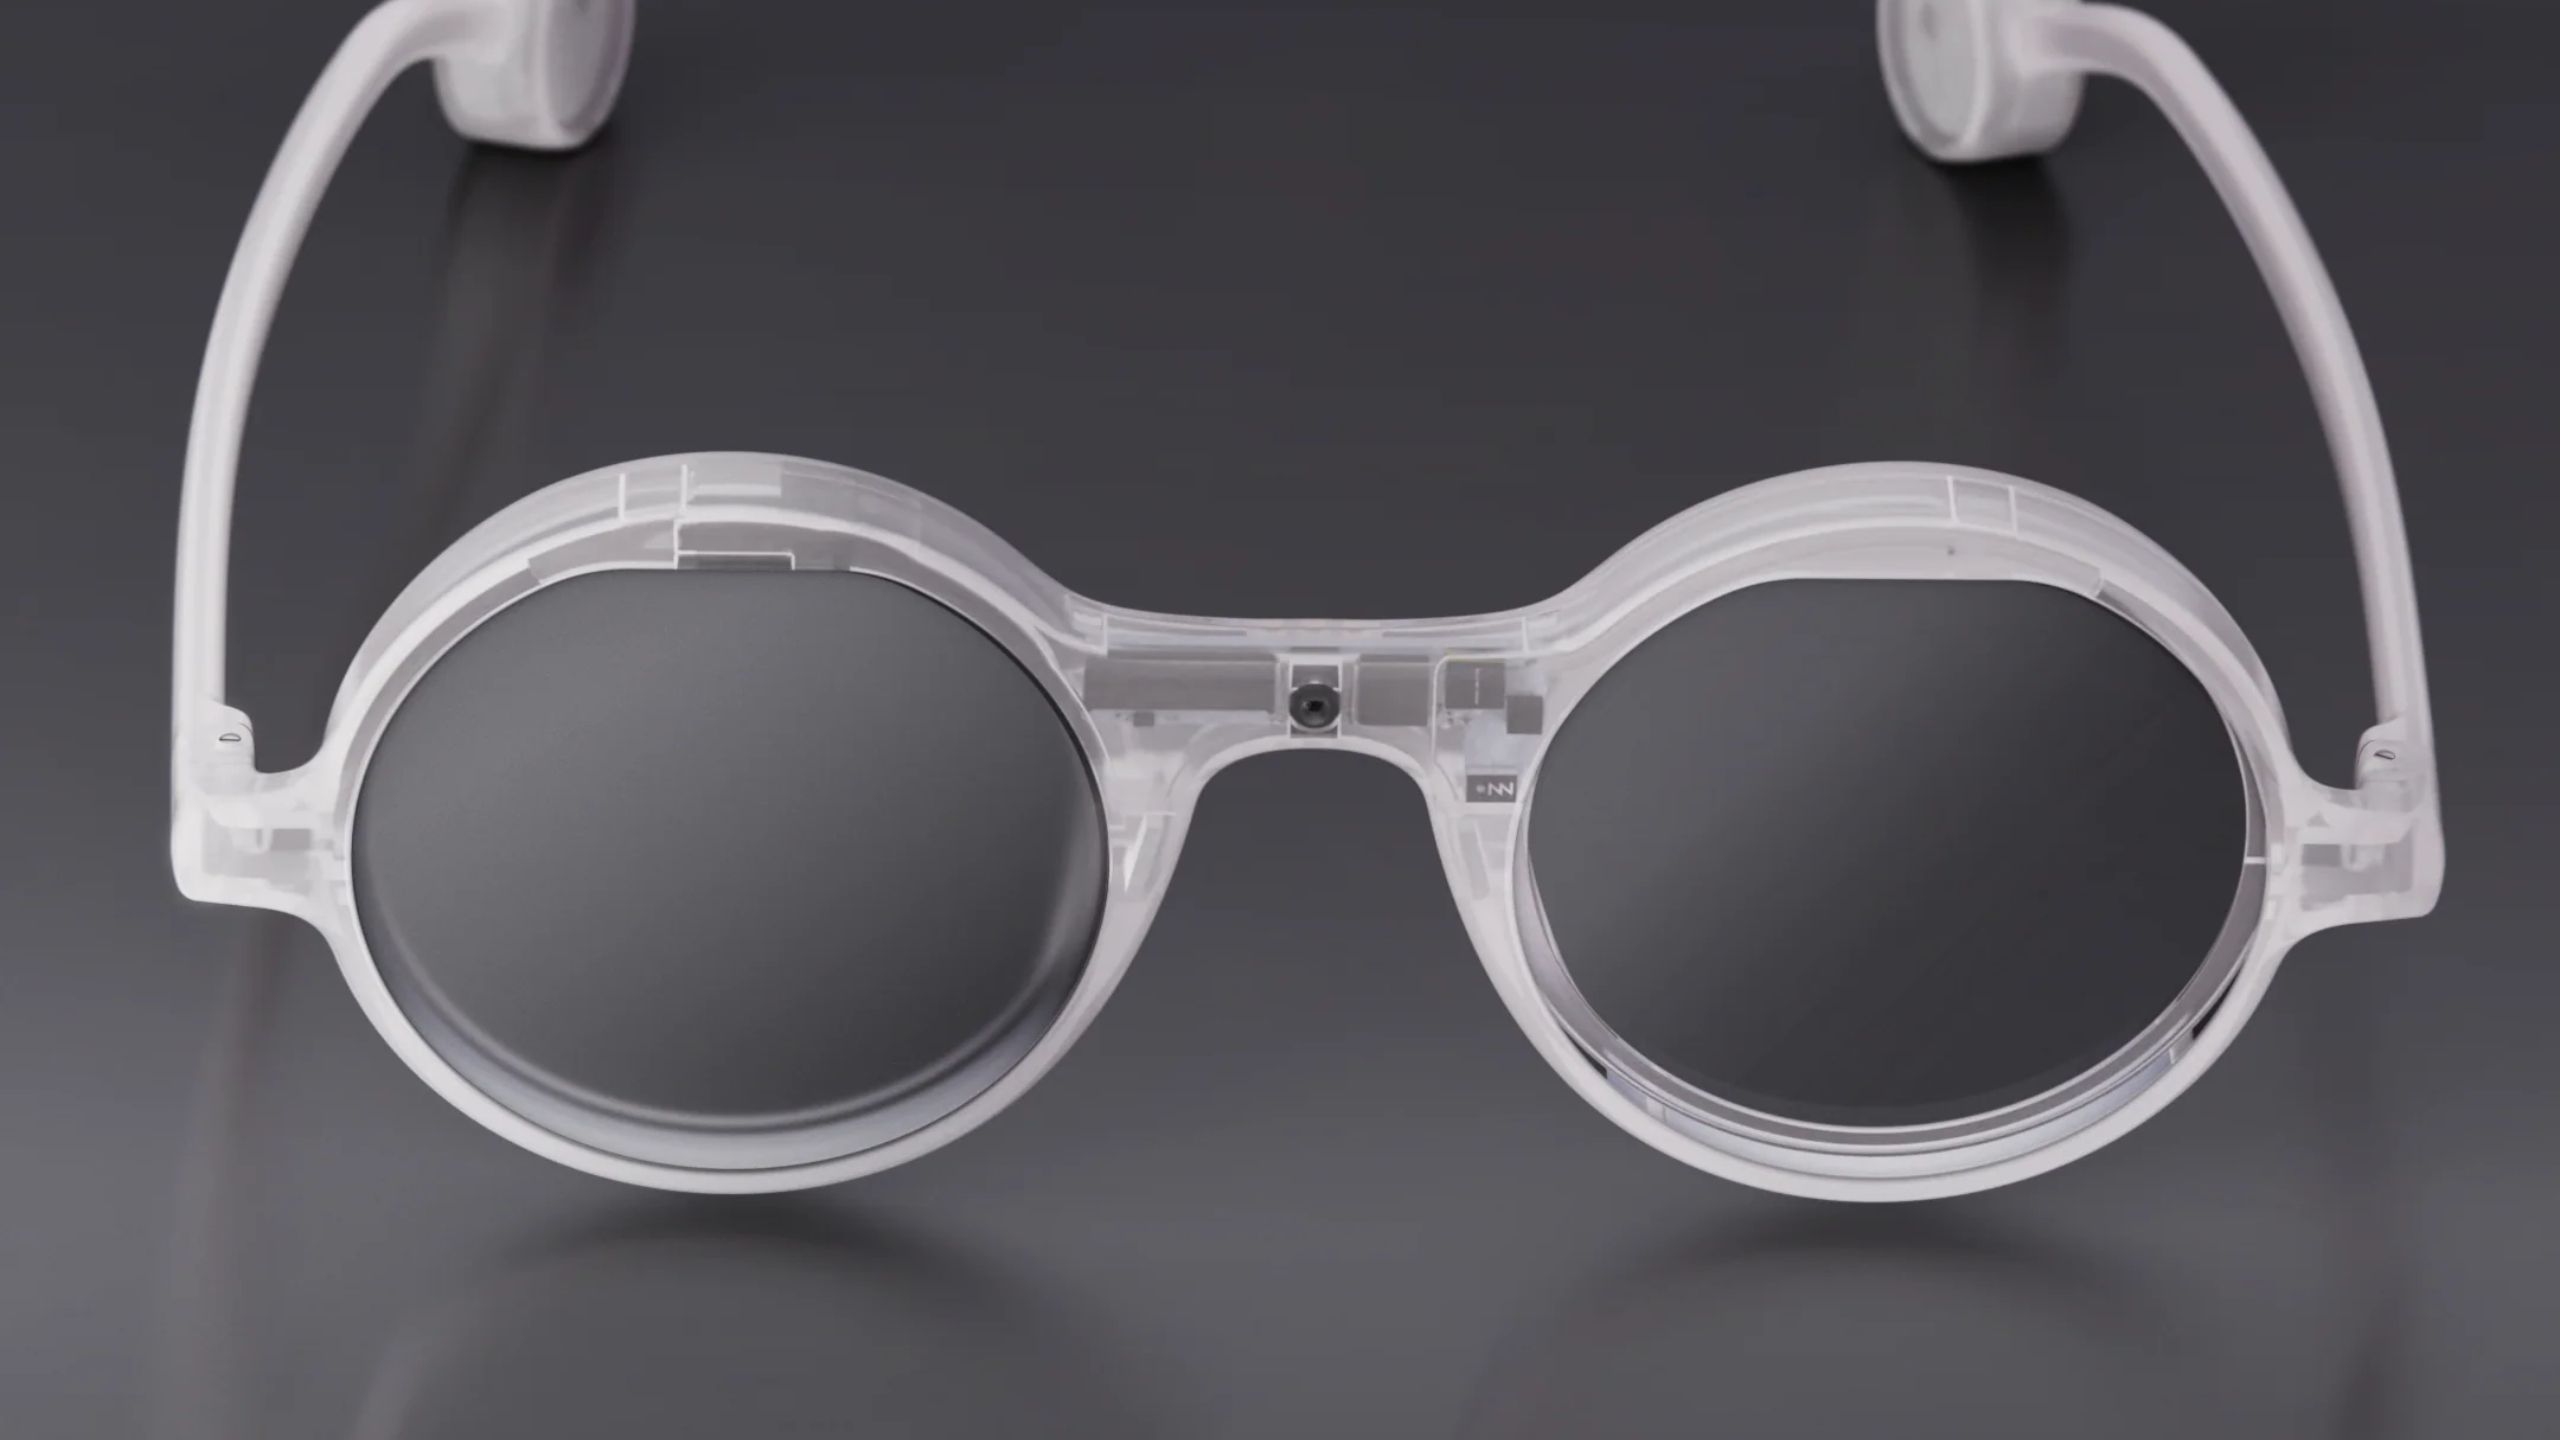 Clear circular AR glasses.